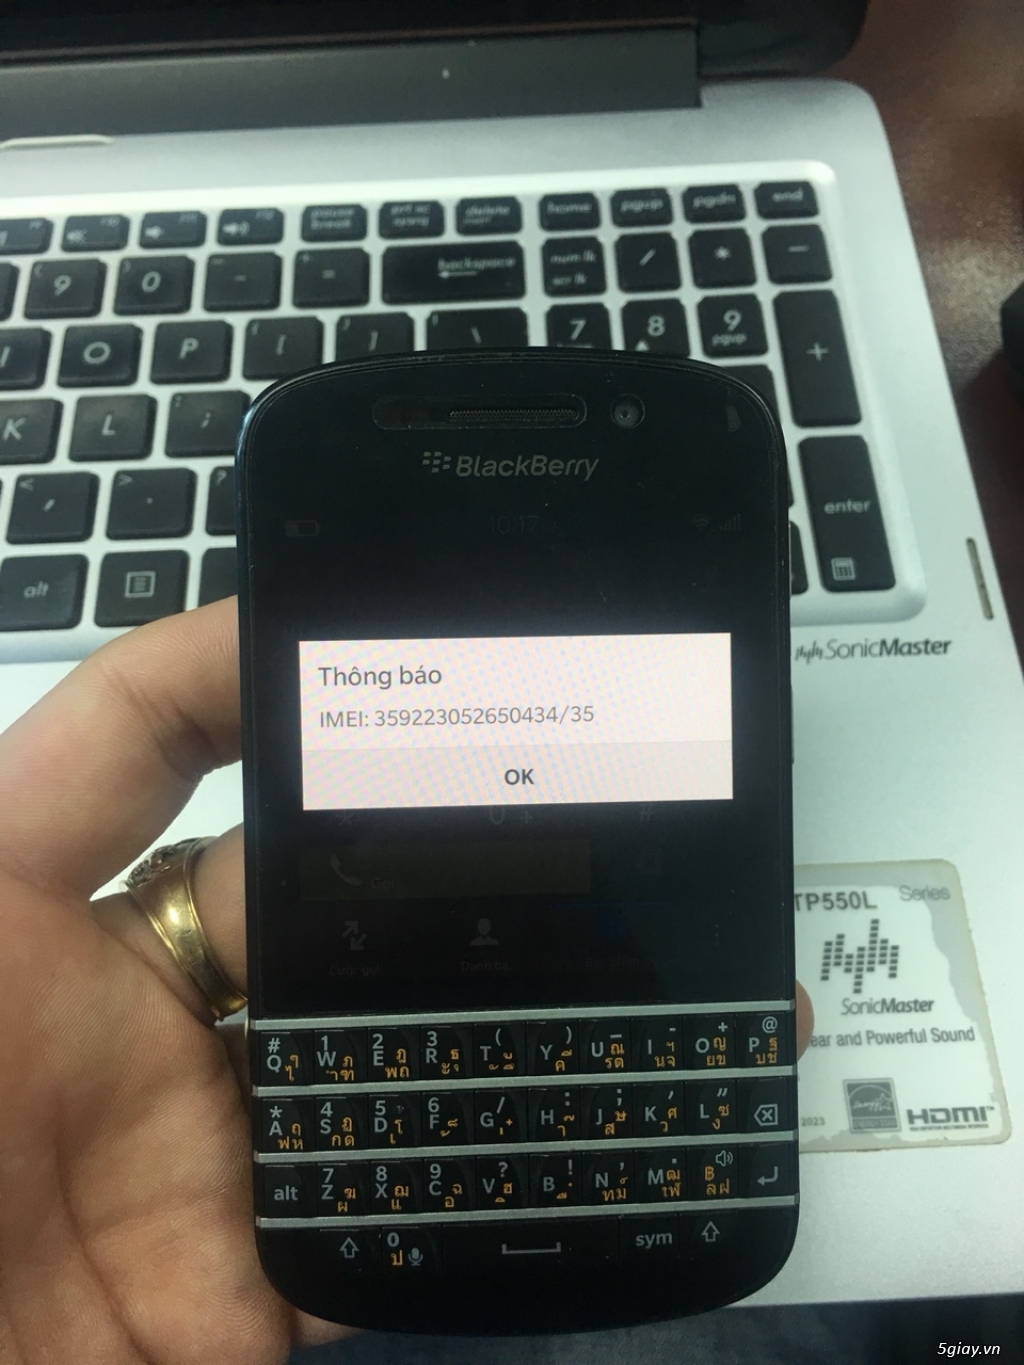 Blacberry Q10 chính hãng Dâu Đen-Petro- chính hãng: bán hoặc giao lưu - 3